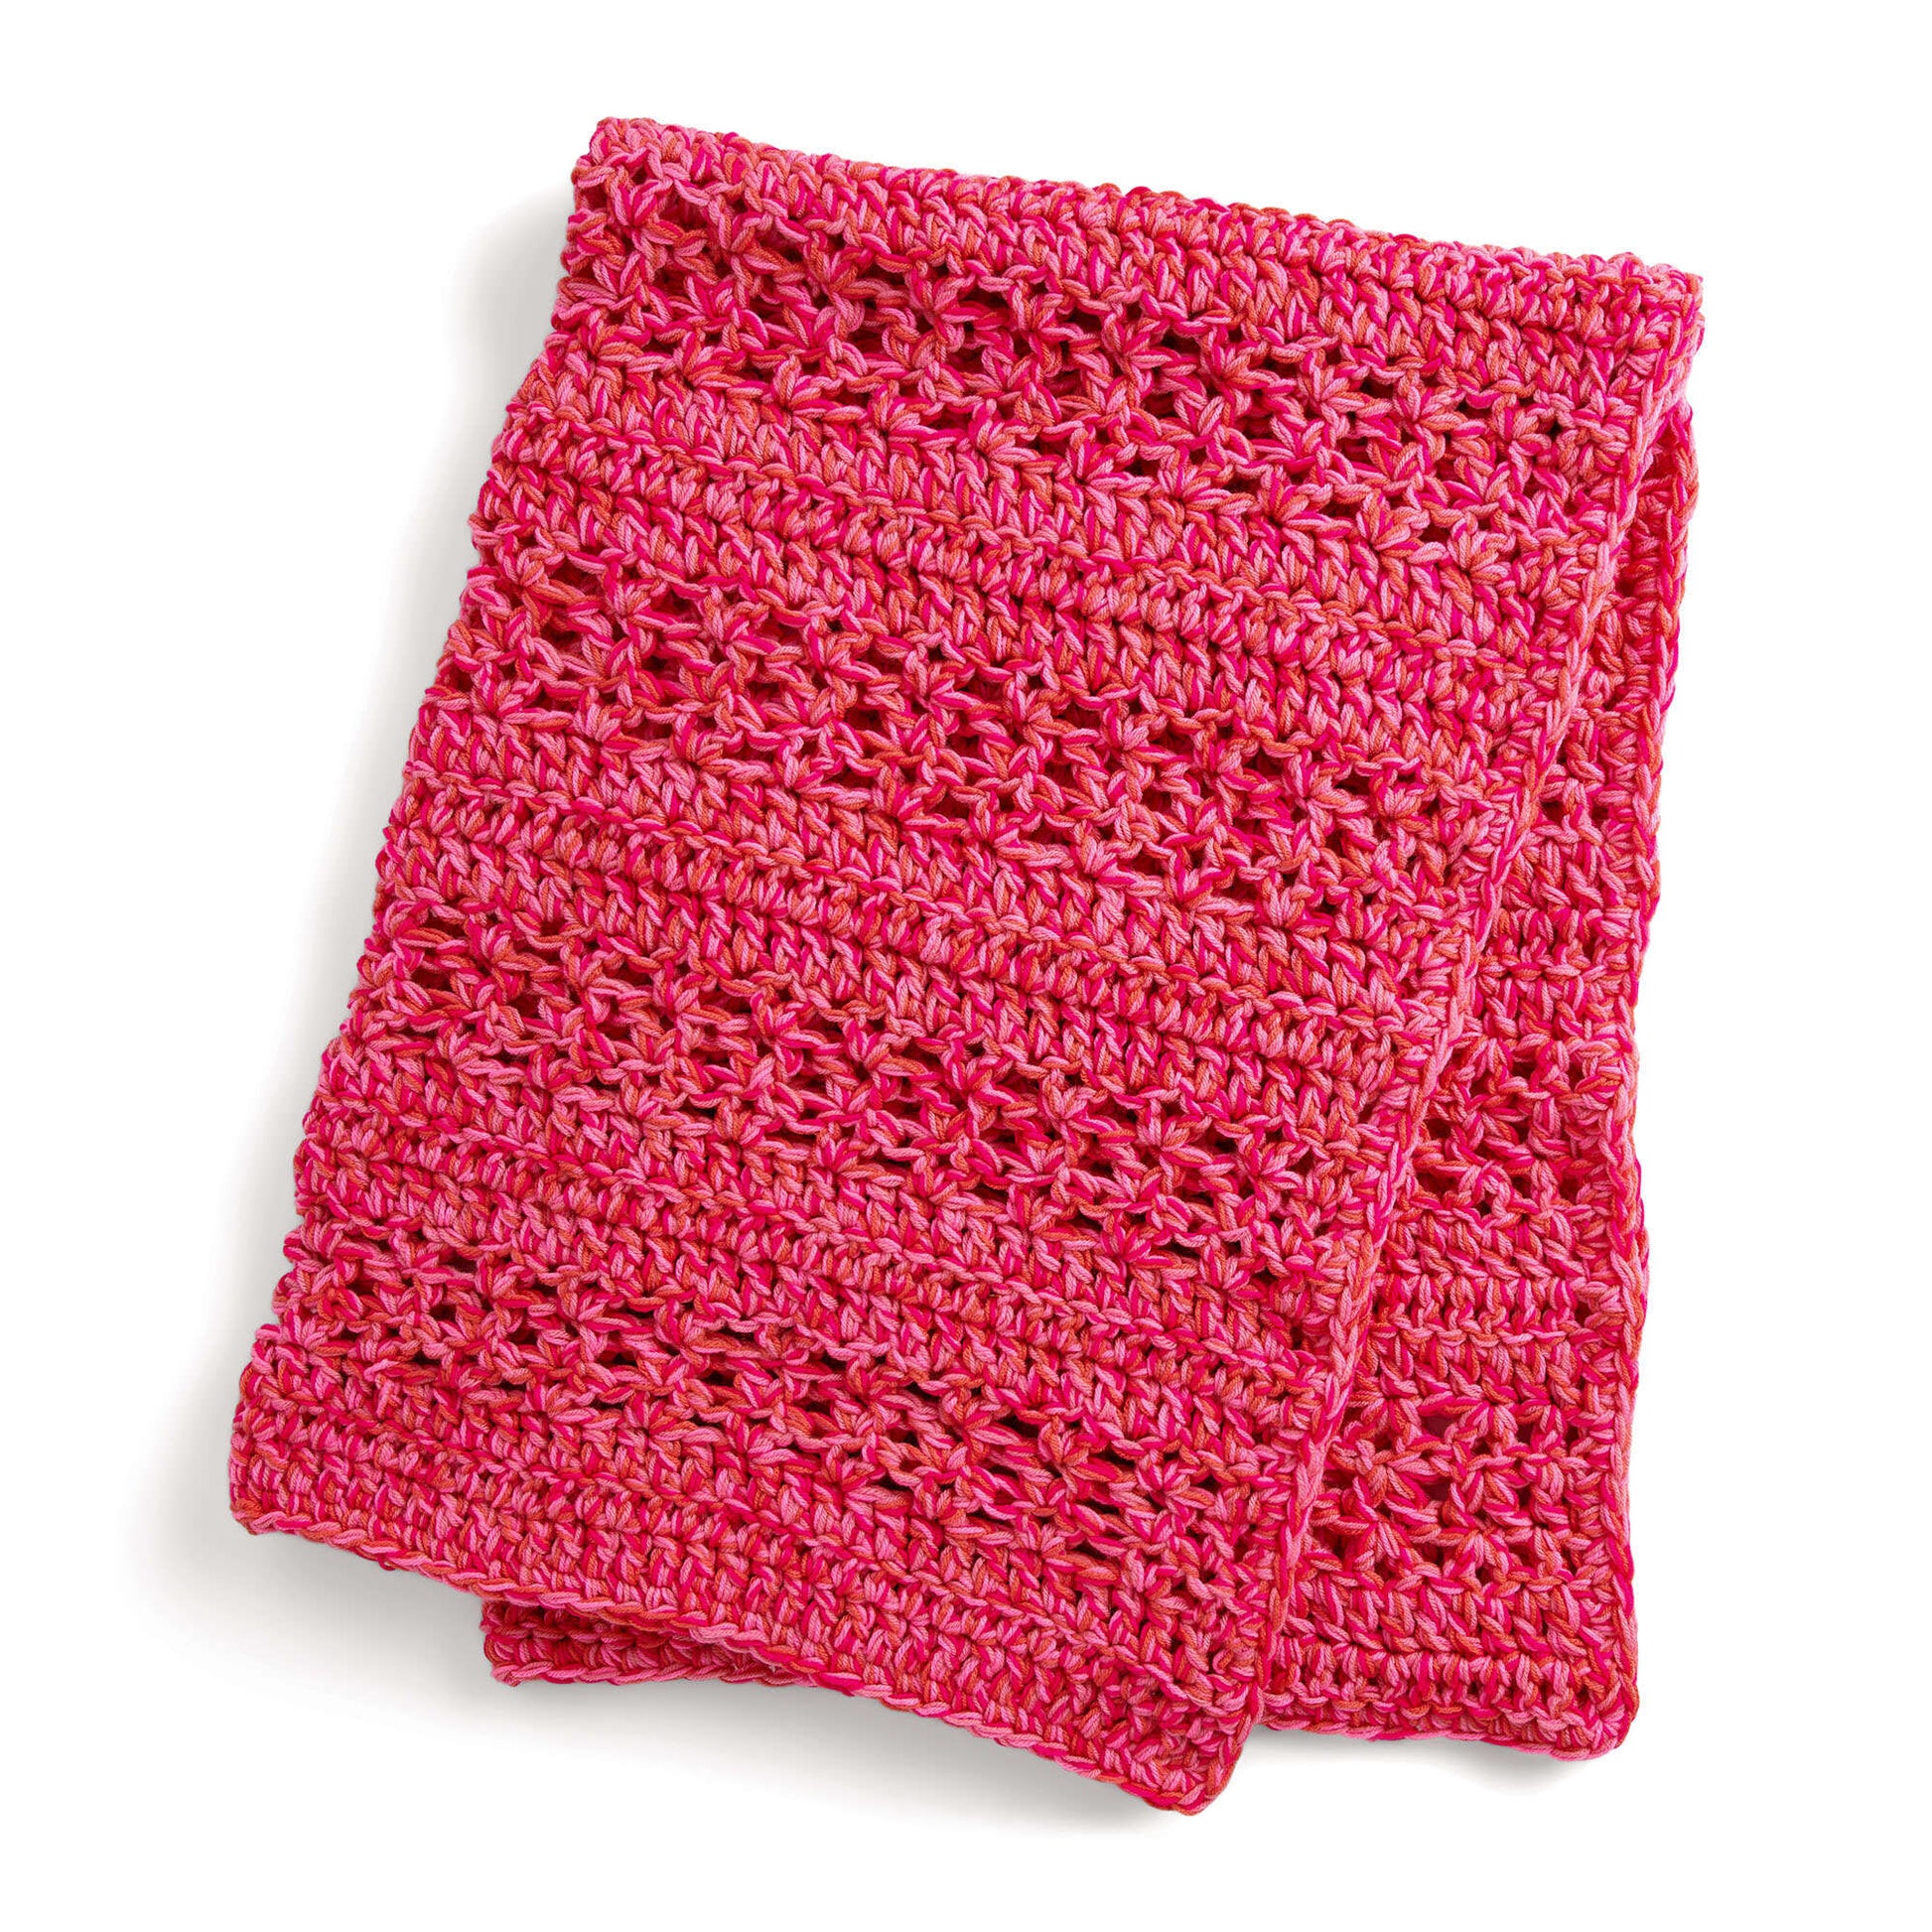 Red Heart Weekend Speedy Crochet Kit + Tutorial